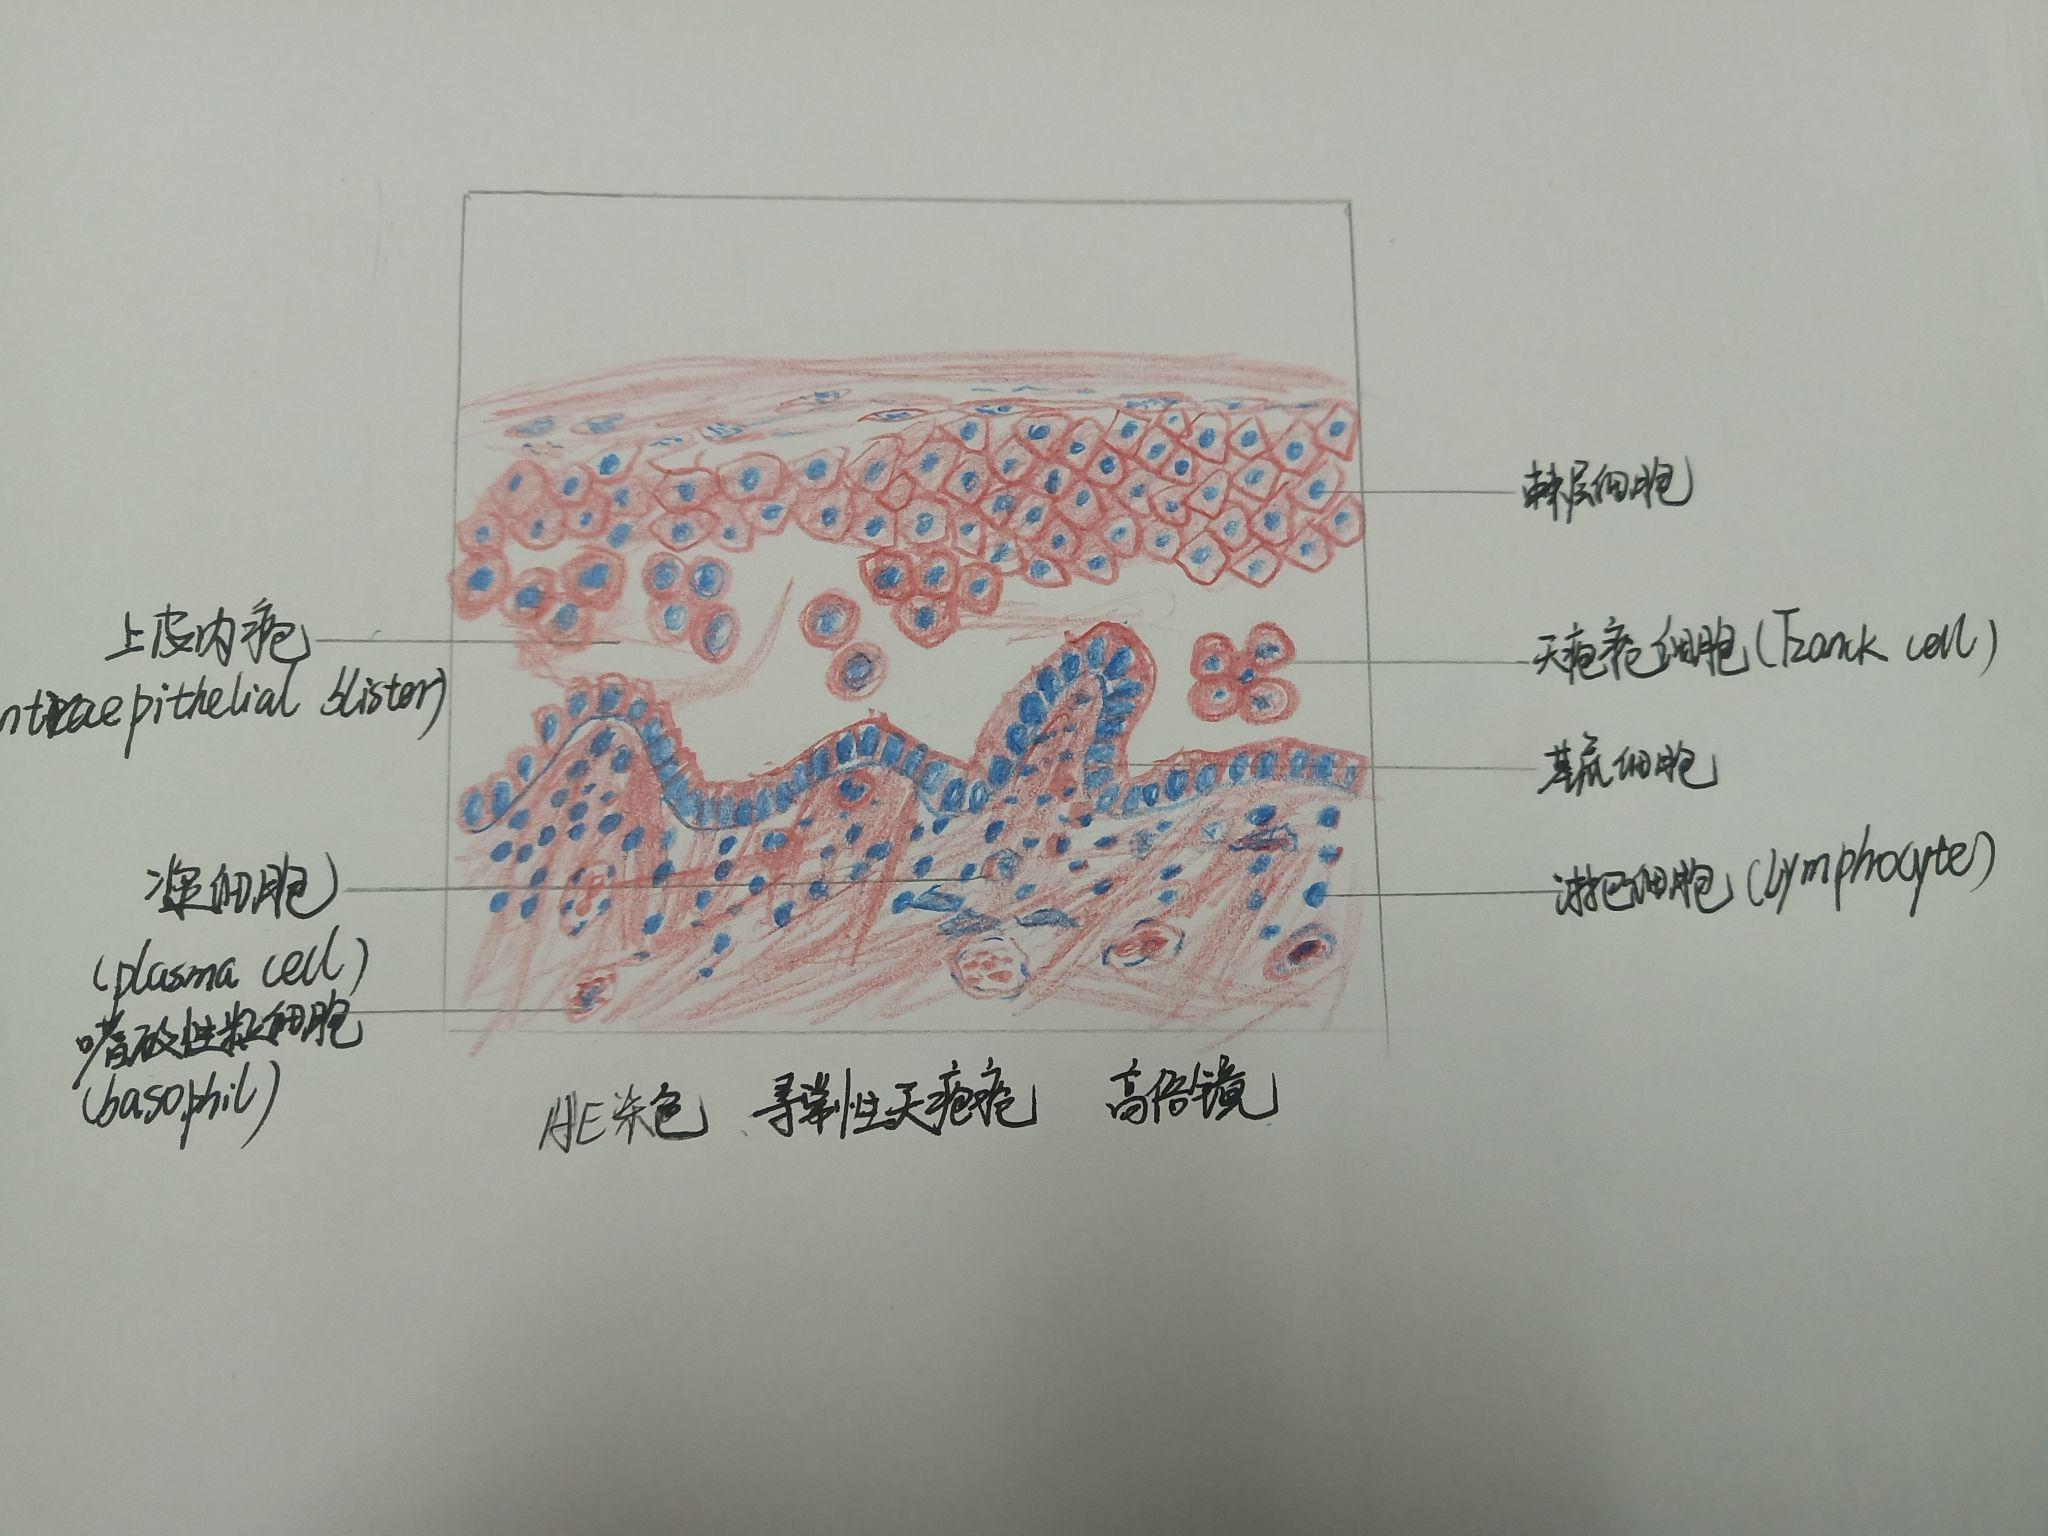 口腔组织病理学红蓝铅笔绘图 